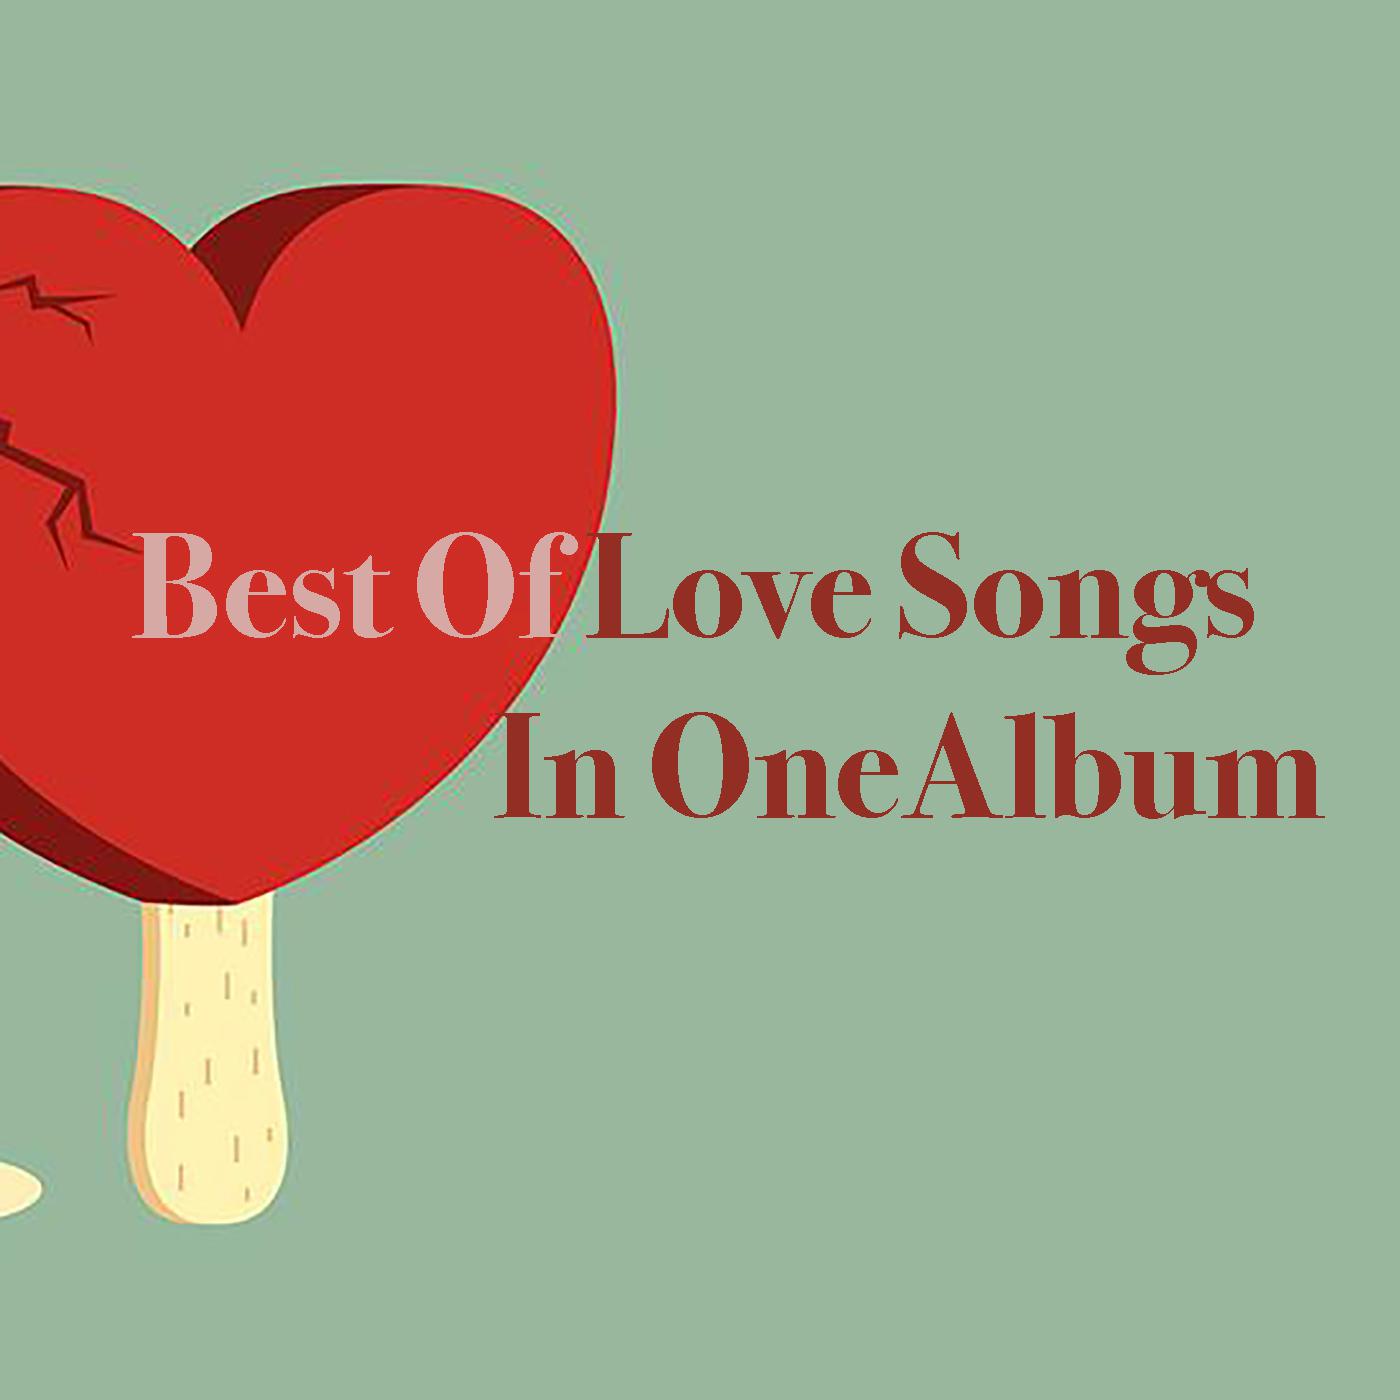 Best Of Love Songs In One Album